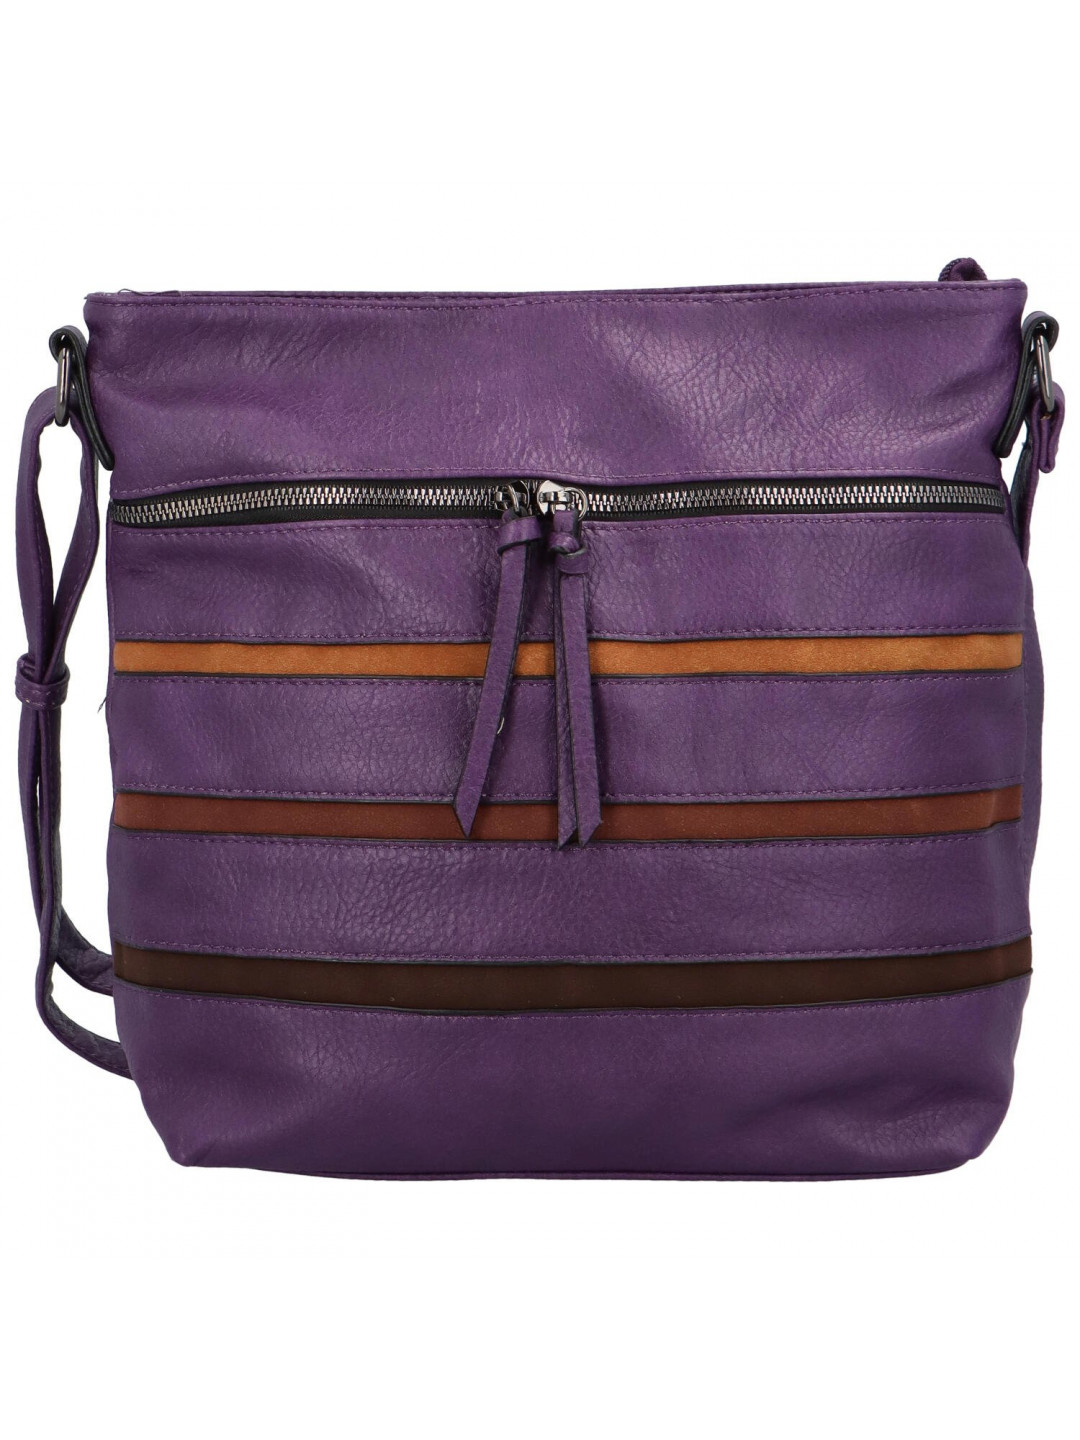 Trendová dámská kabelka přes rameno Calanthe fialová